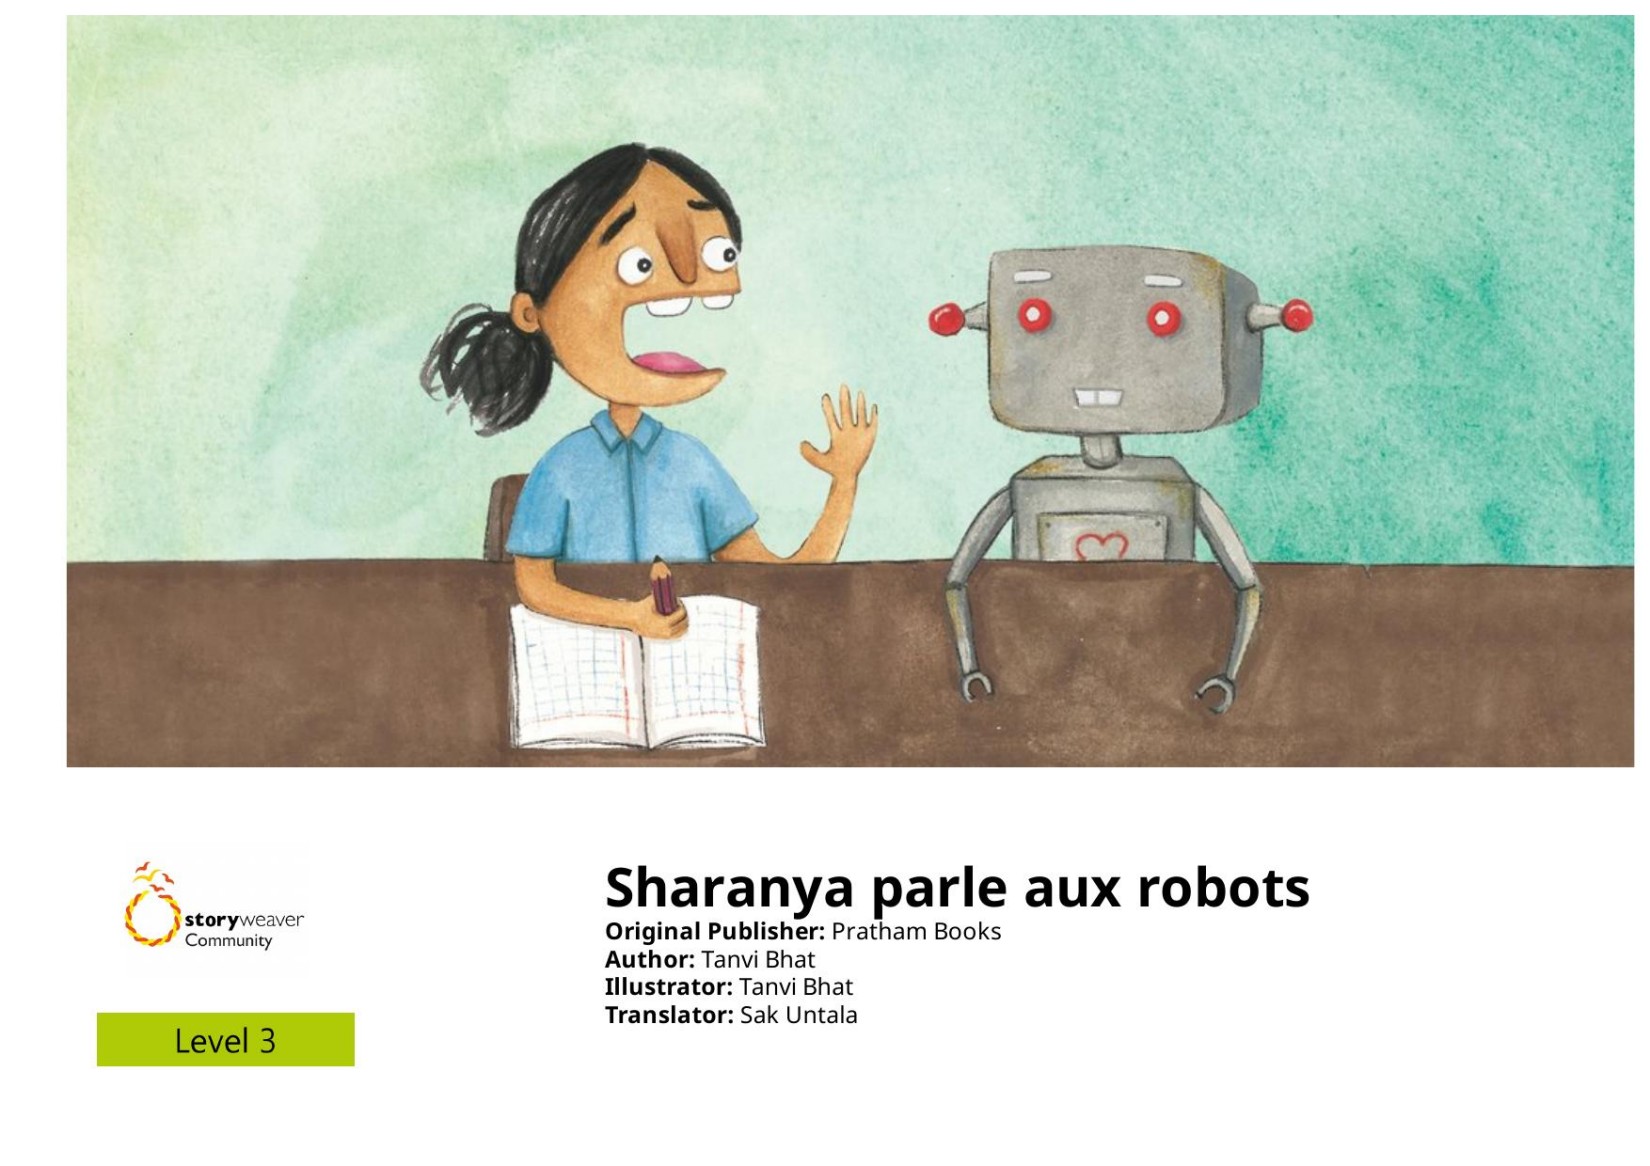 Sharanya parle aux robots